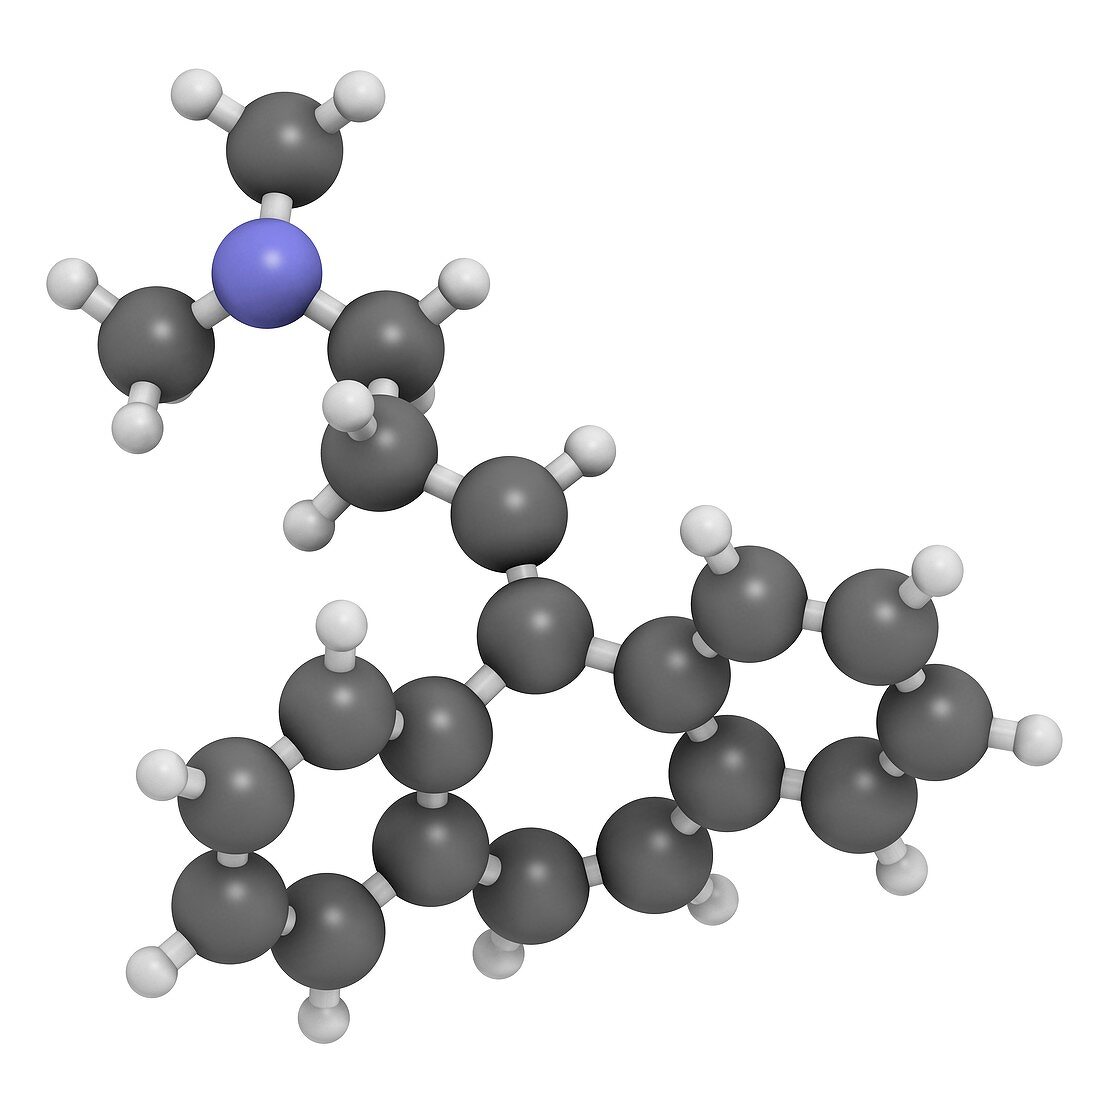 Cyclobenzaprine molecule